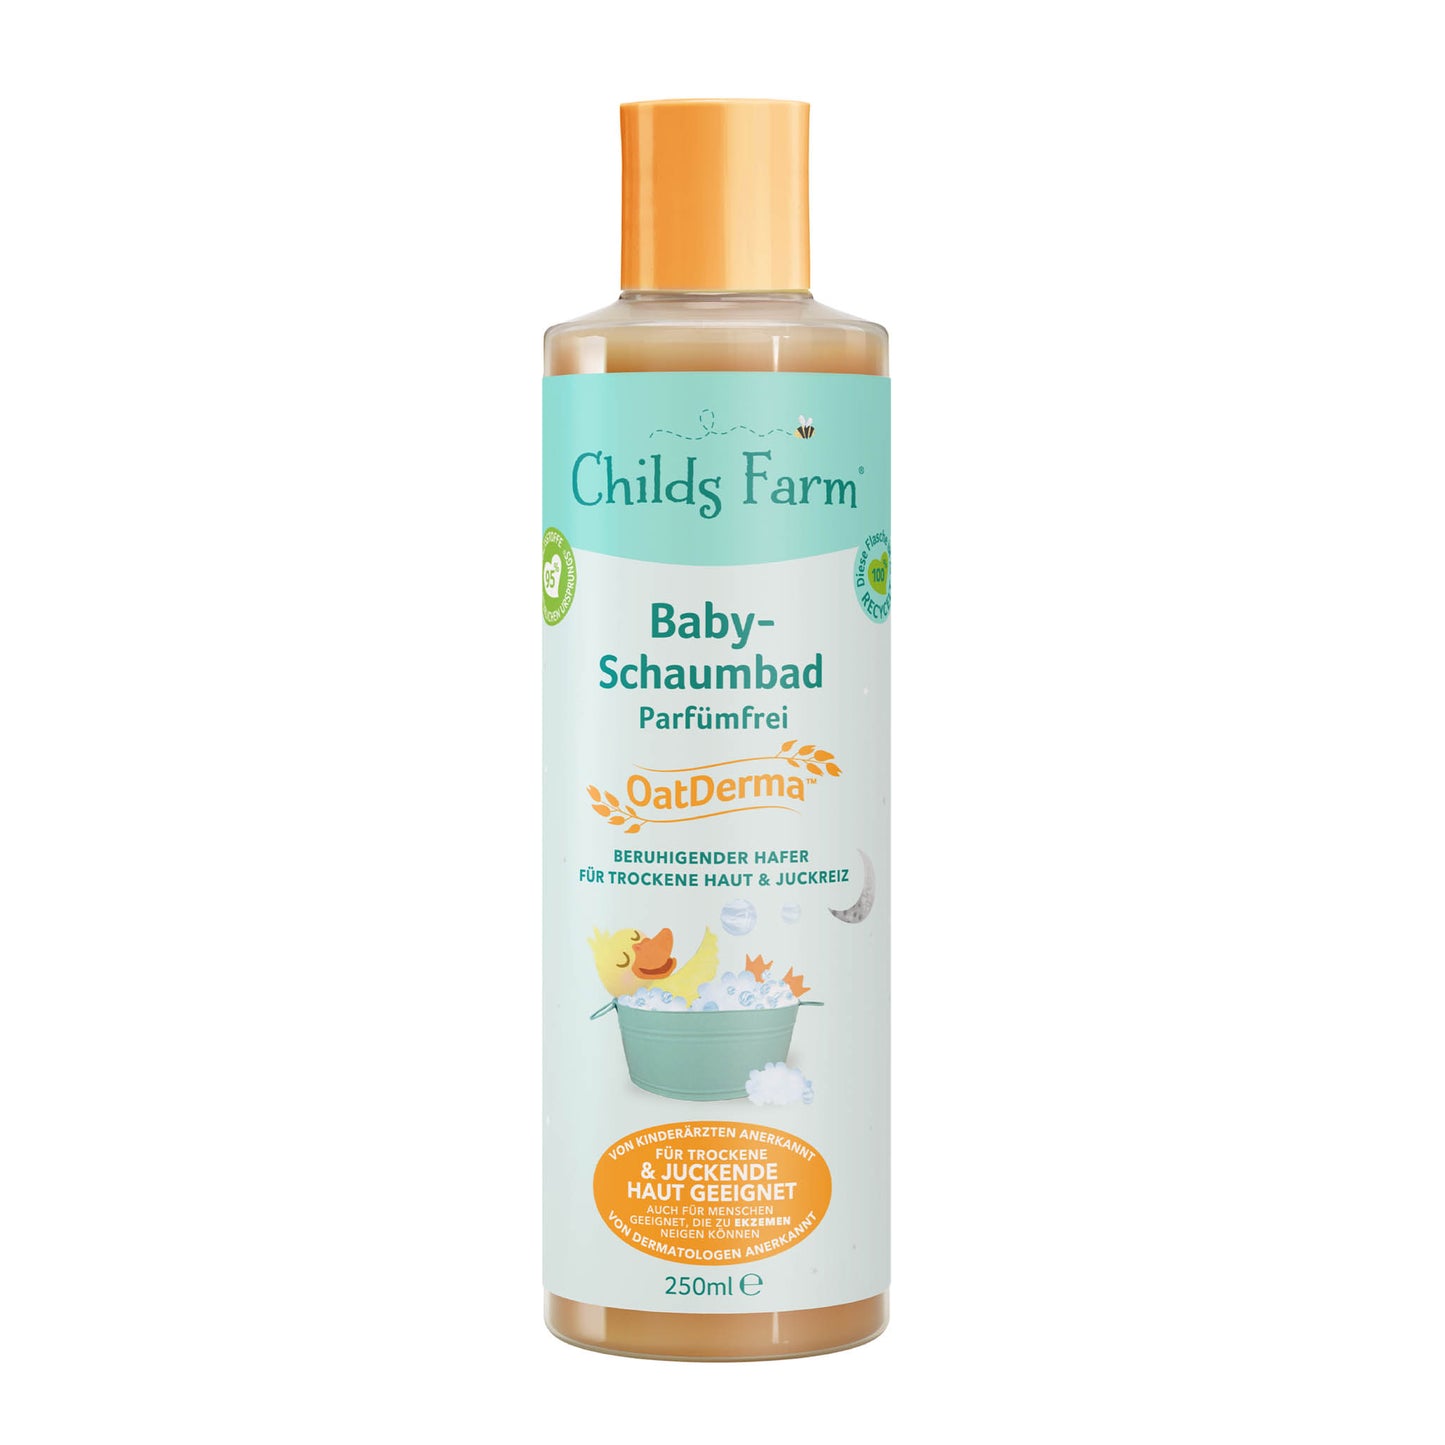 Childs Farm OatDerma™ Baby-Schaumbad Parfümfrei